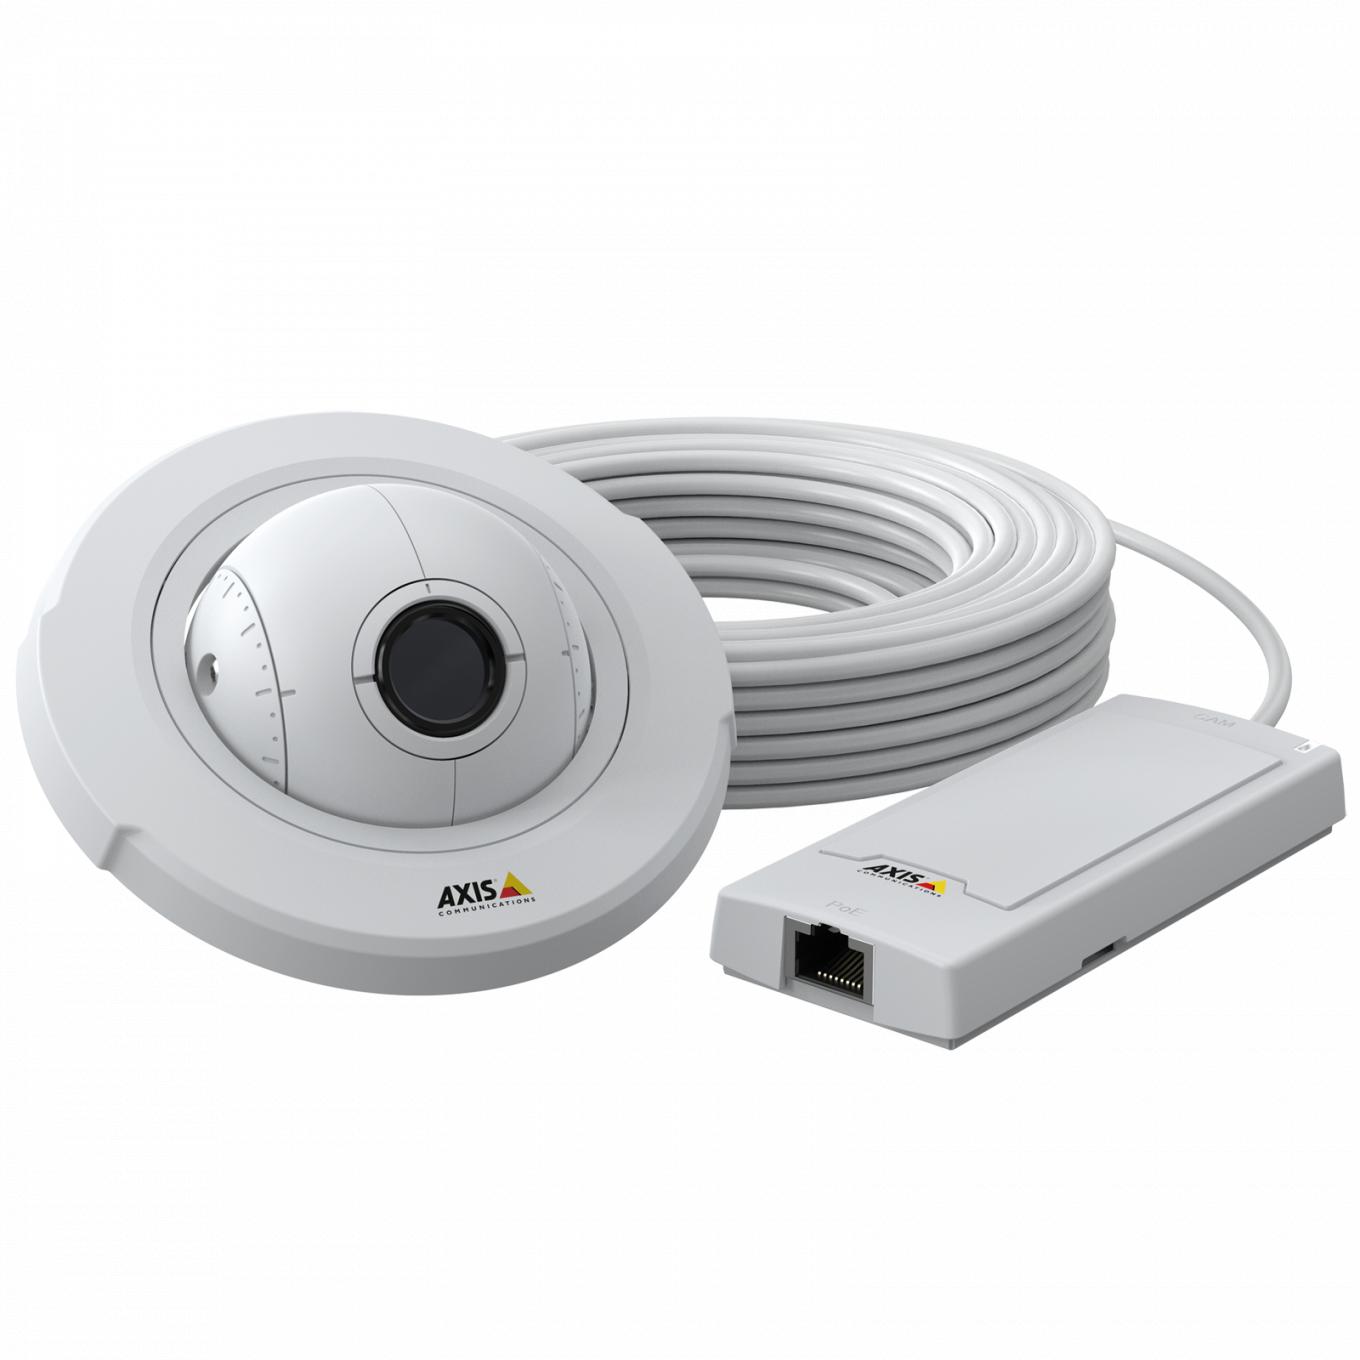 Caméra blanche de forme ronde avec câbles acheminés dans un boîtier compact.